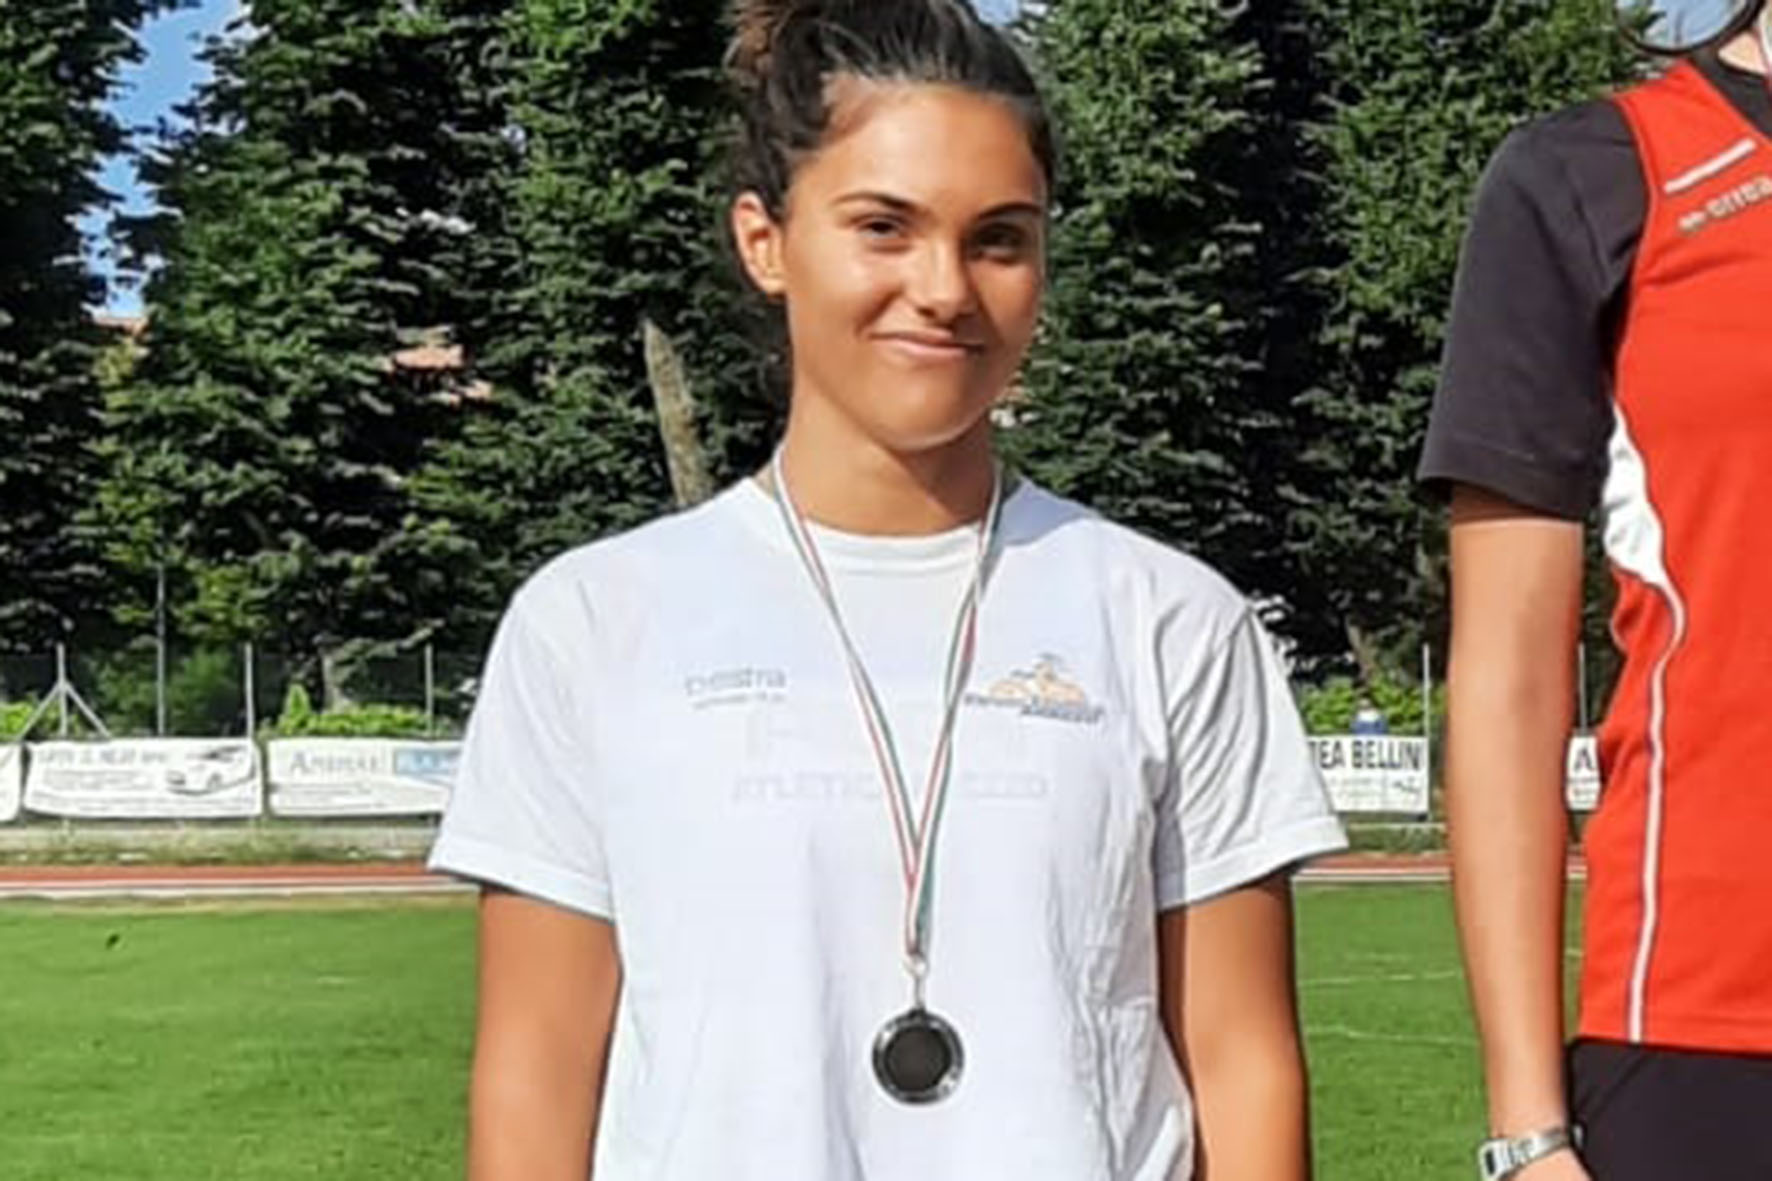 Prime medaglie per l’Alga Atletica Arezzo dopo la pausa estiva